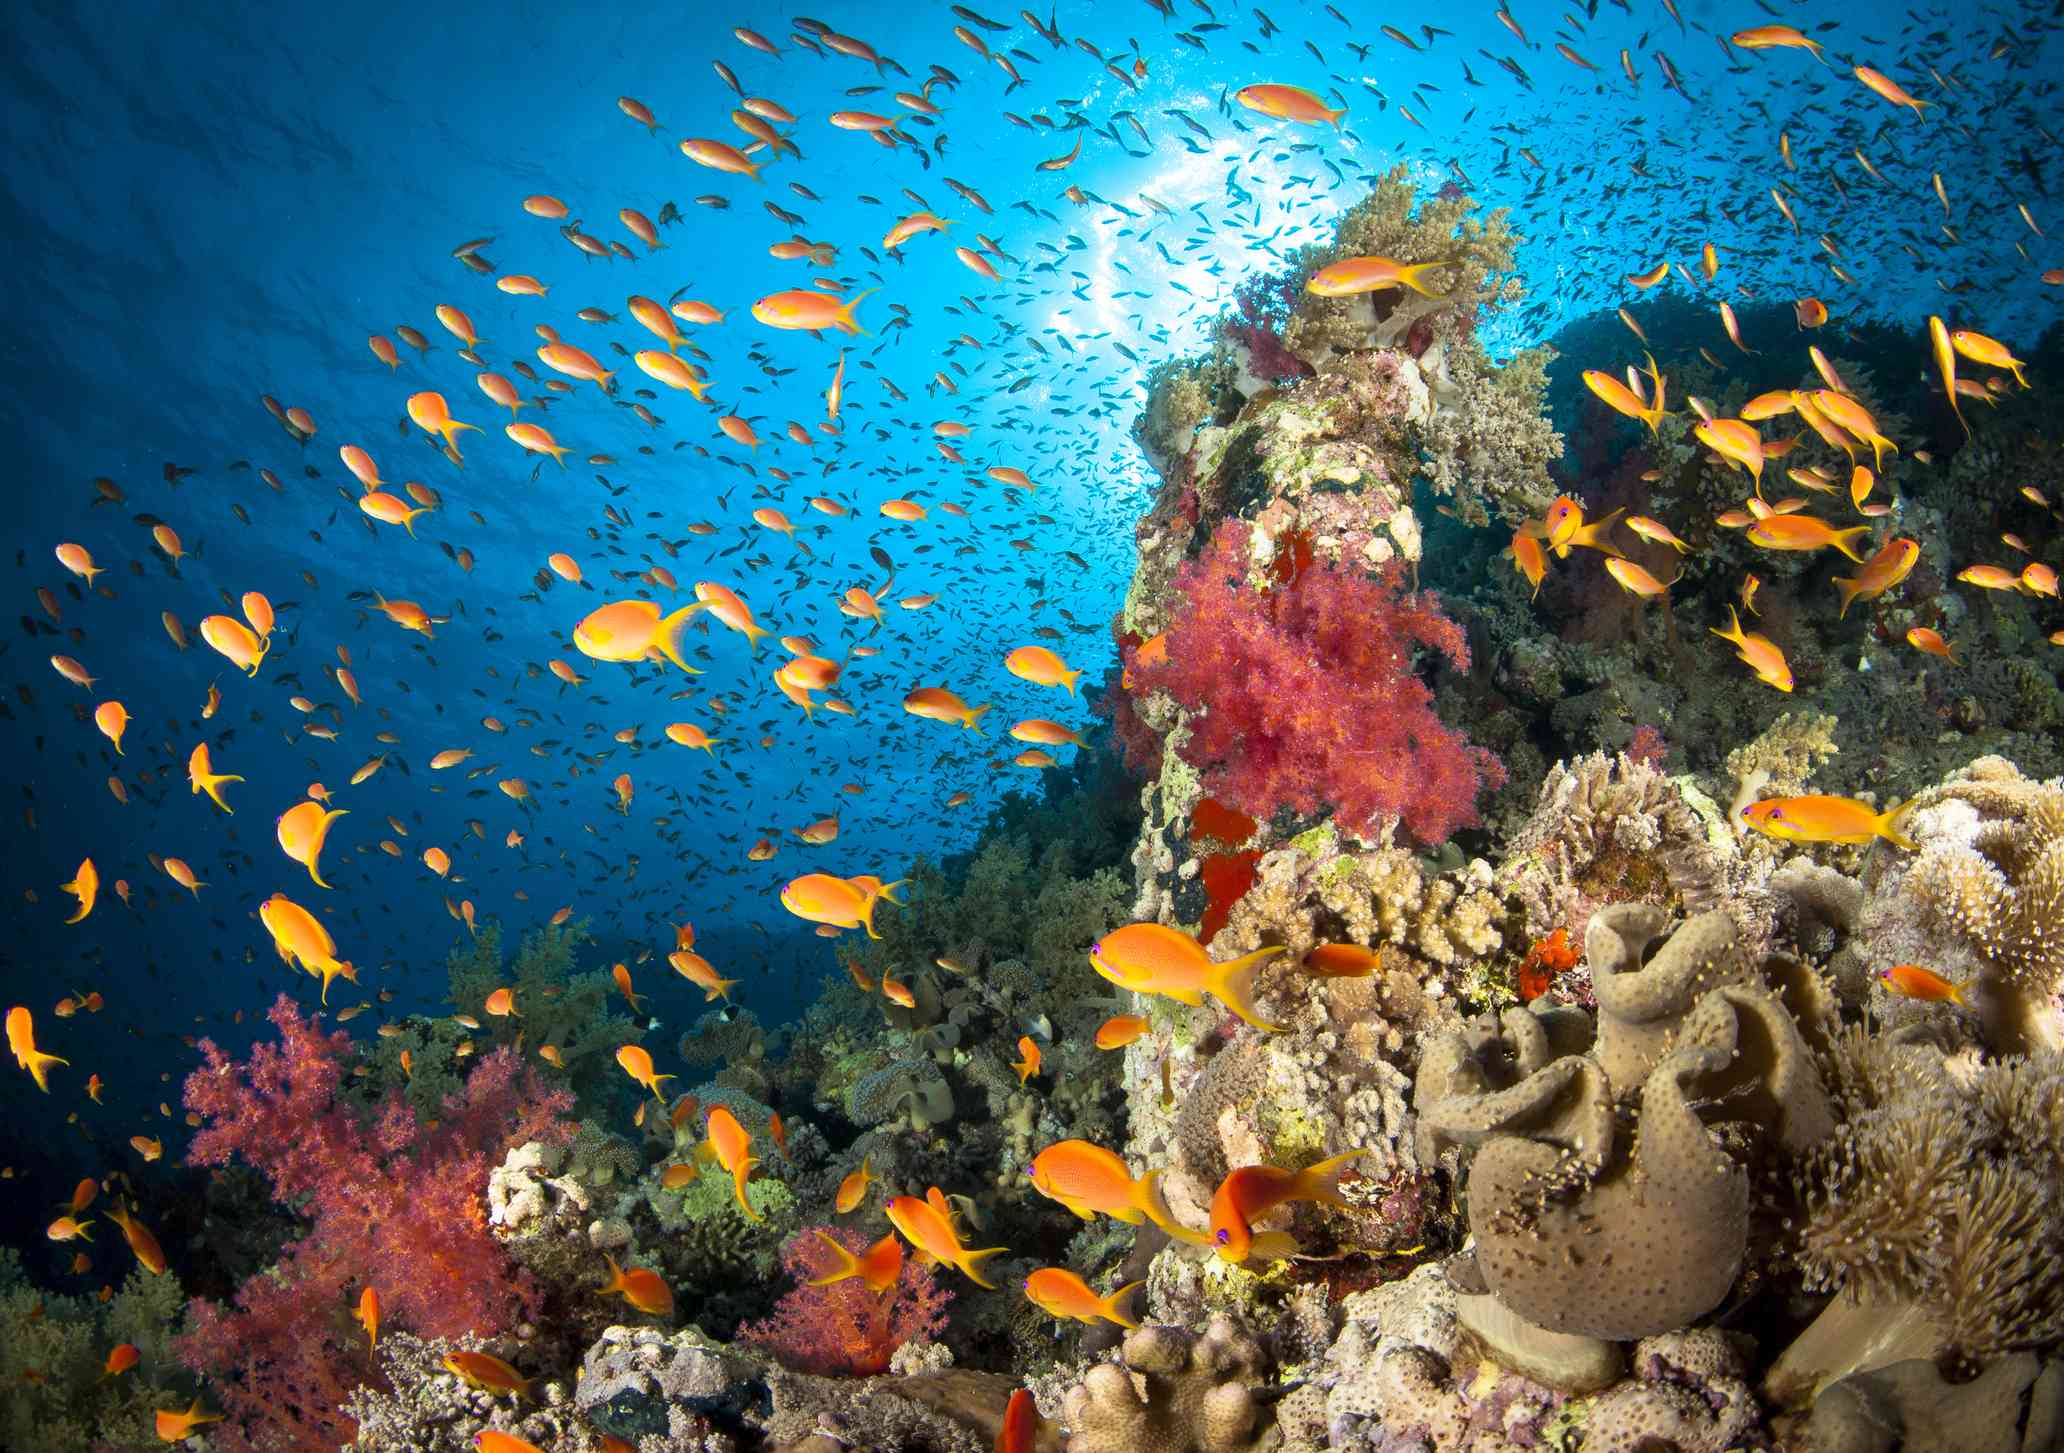 un arrecife repleto de peces anaranjados entre una variedad de corales duros y blandos de color rojo, verde y bronceado, con el azul brillante del Mar Rojo por encima